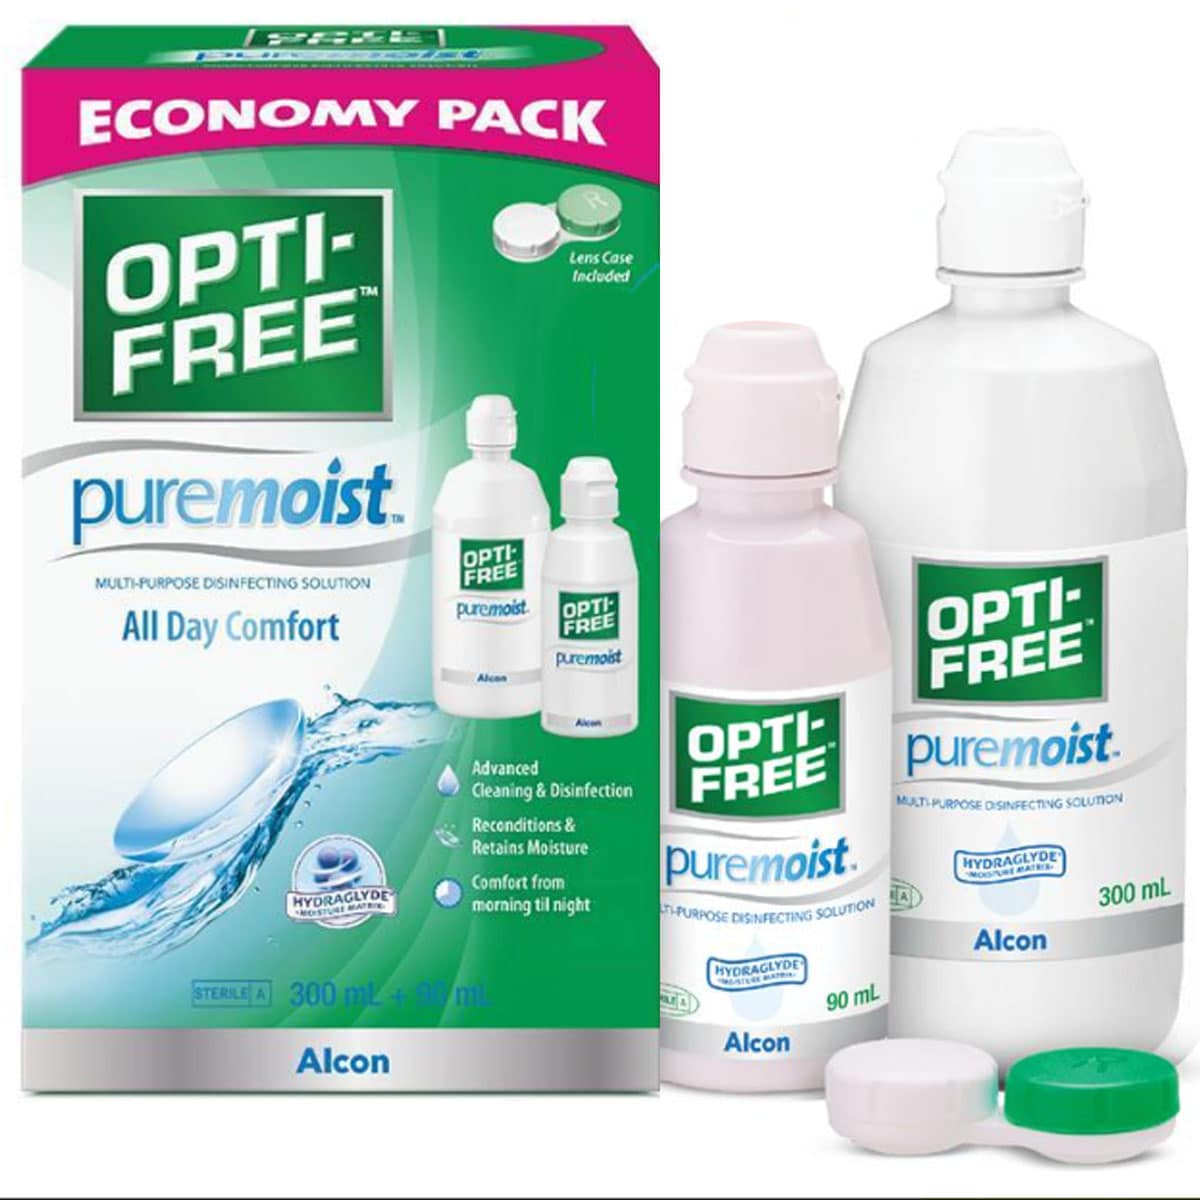 Opti-Free Puremoist Economy Pack 300ml + 90ml